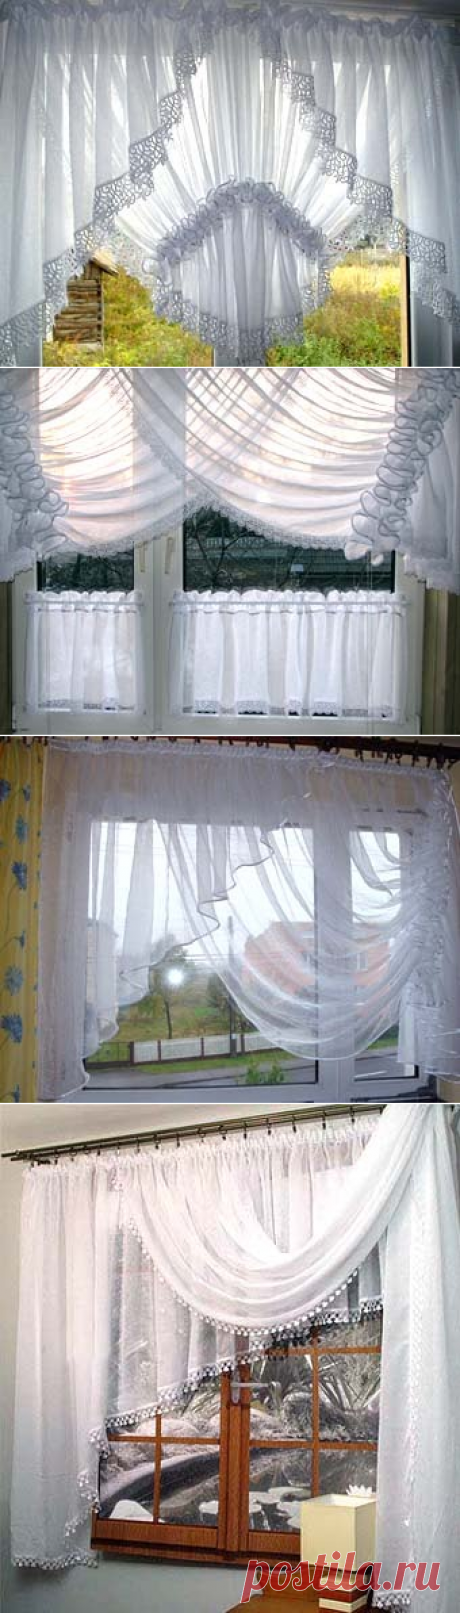 Оформляем окно на кухне: легкие белые шторы